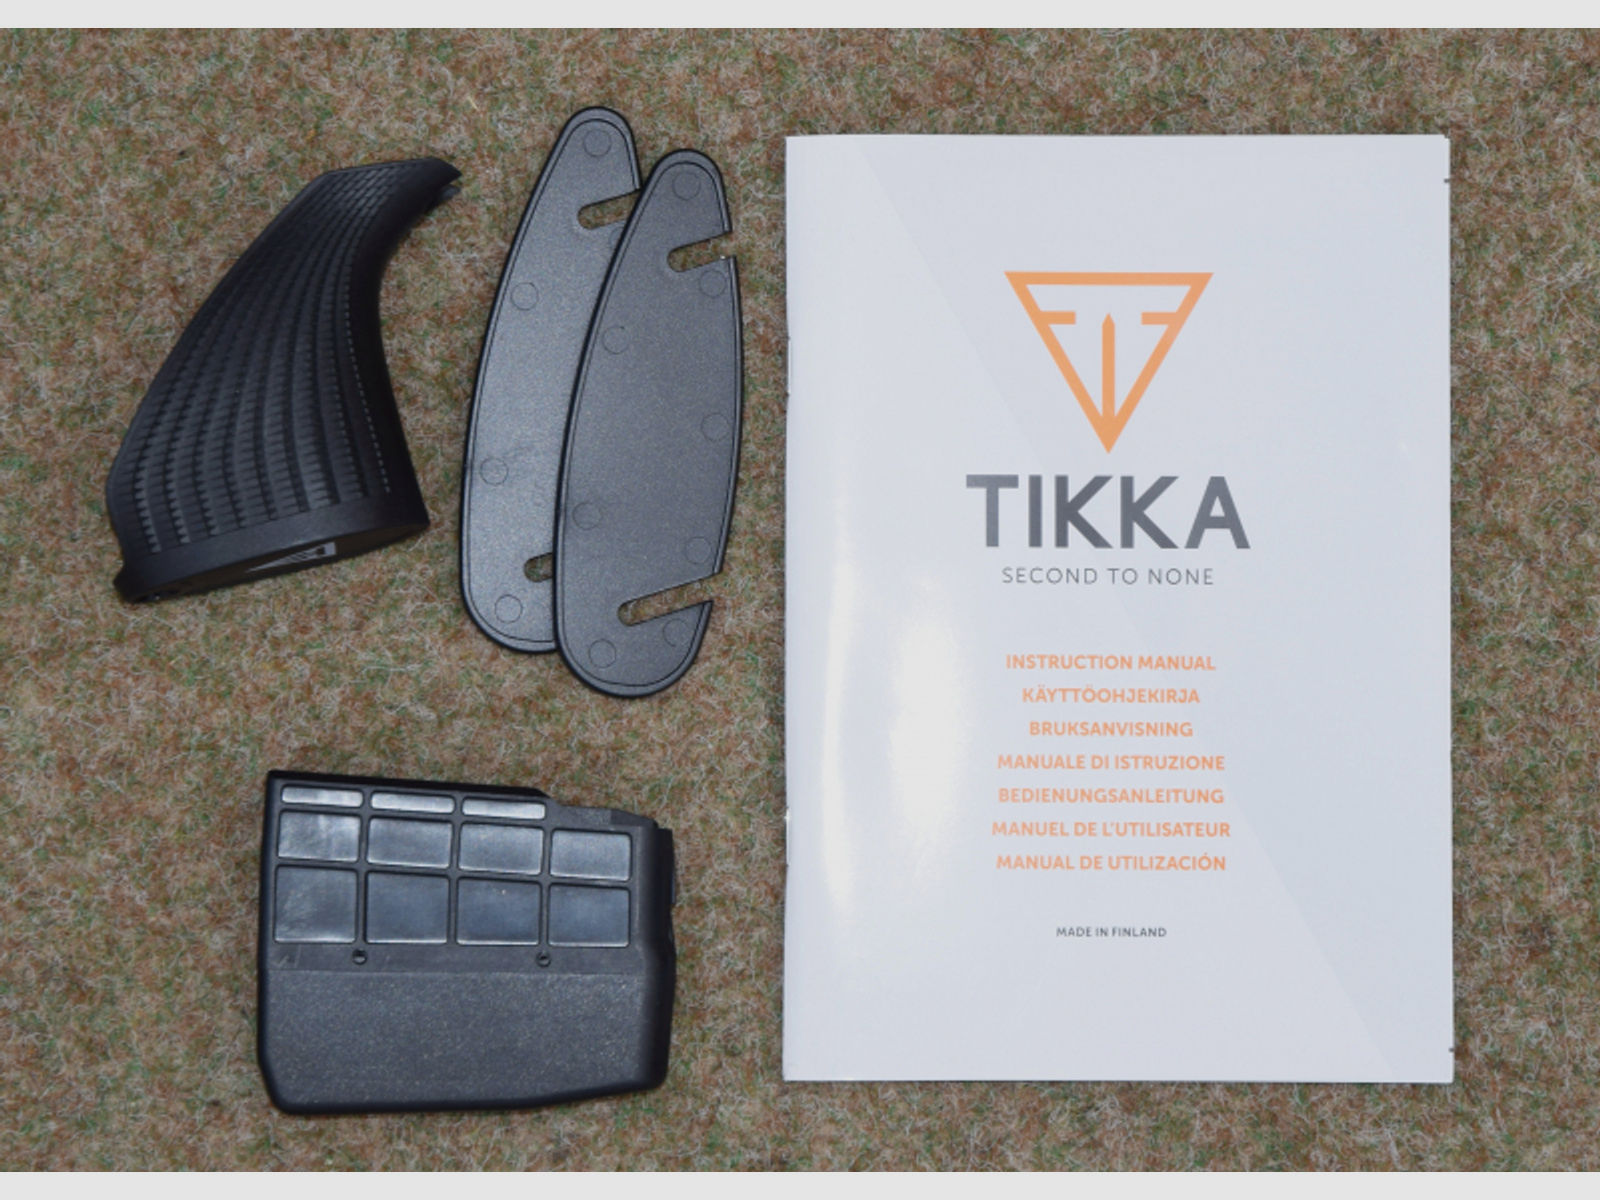 Tikka T3X Lite Stainless mit M15/1 Gewinde in .308 Win., Linkssystem